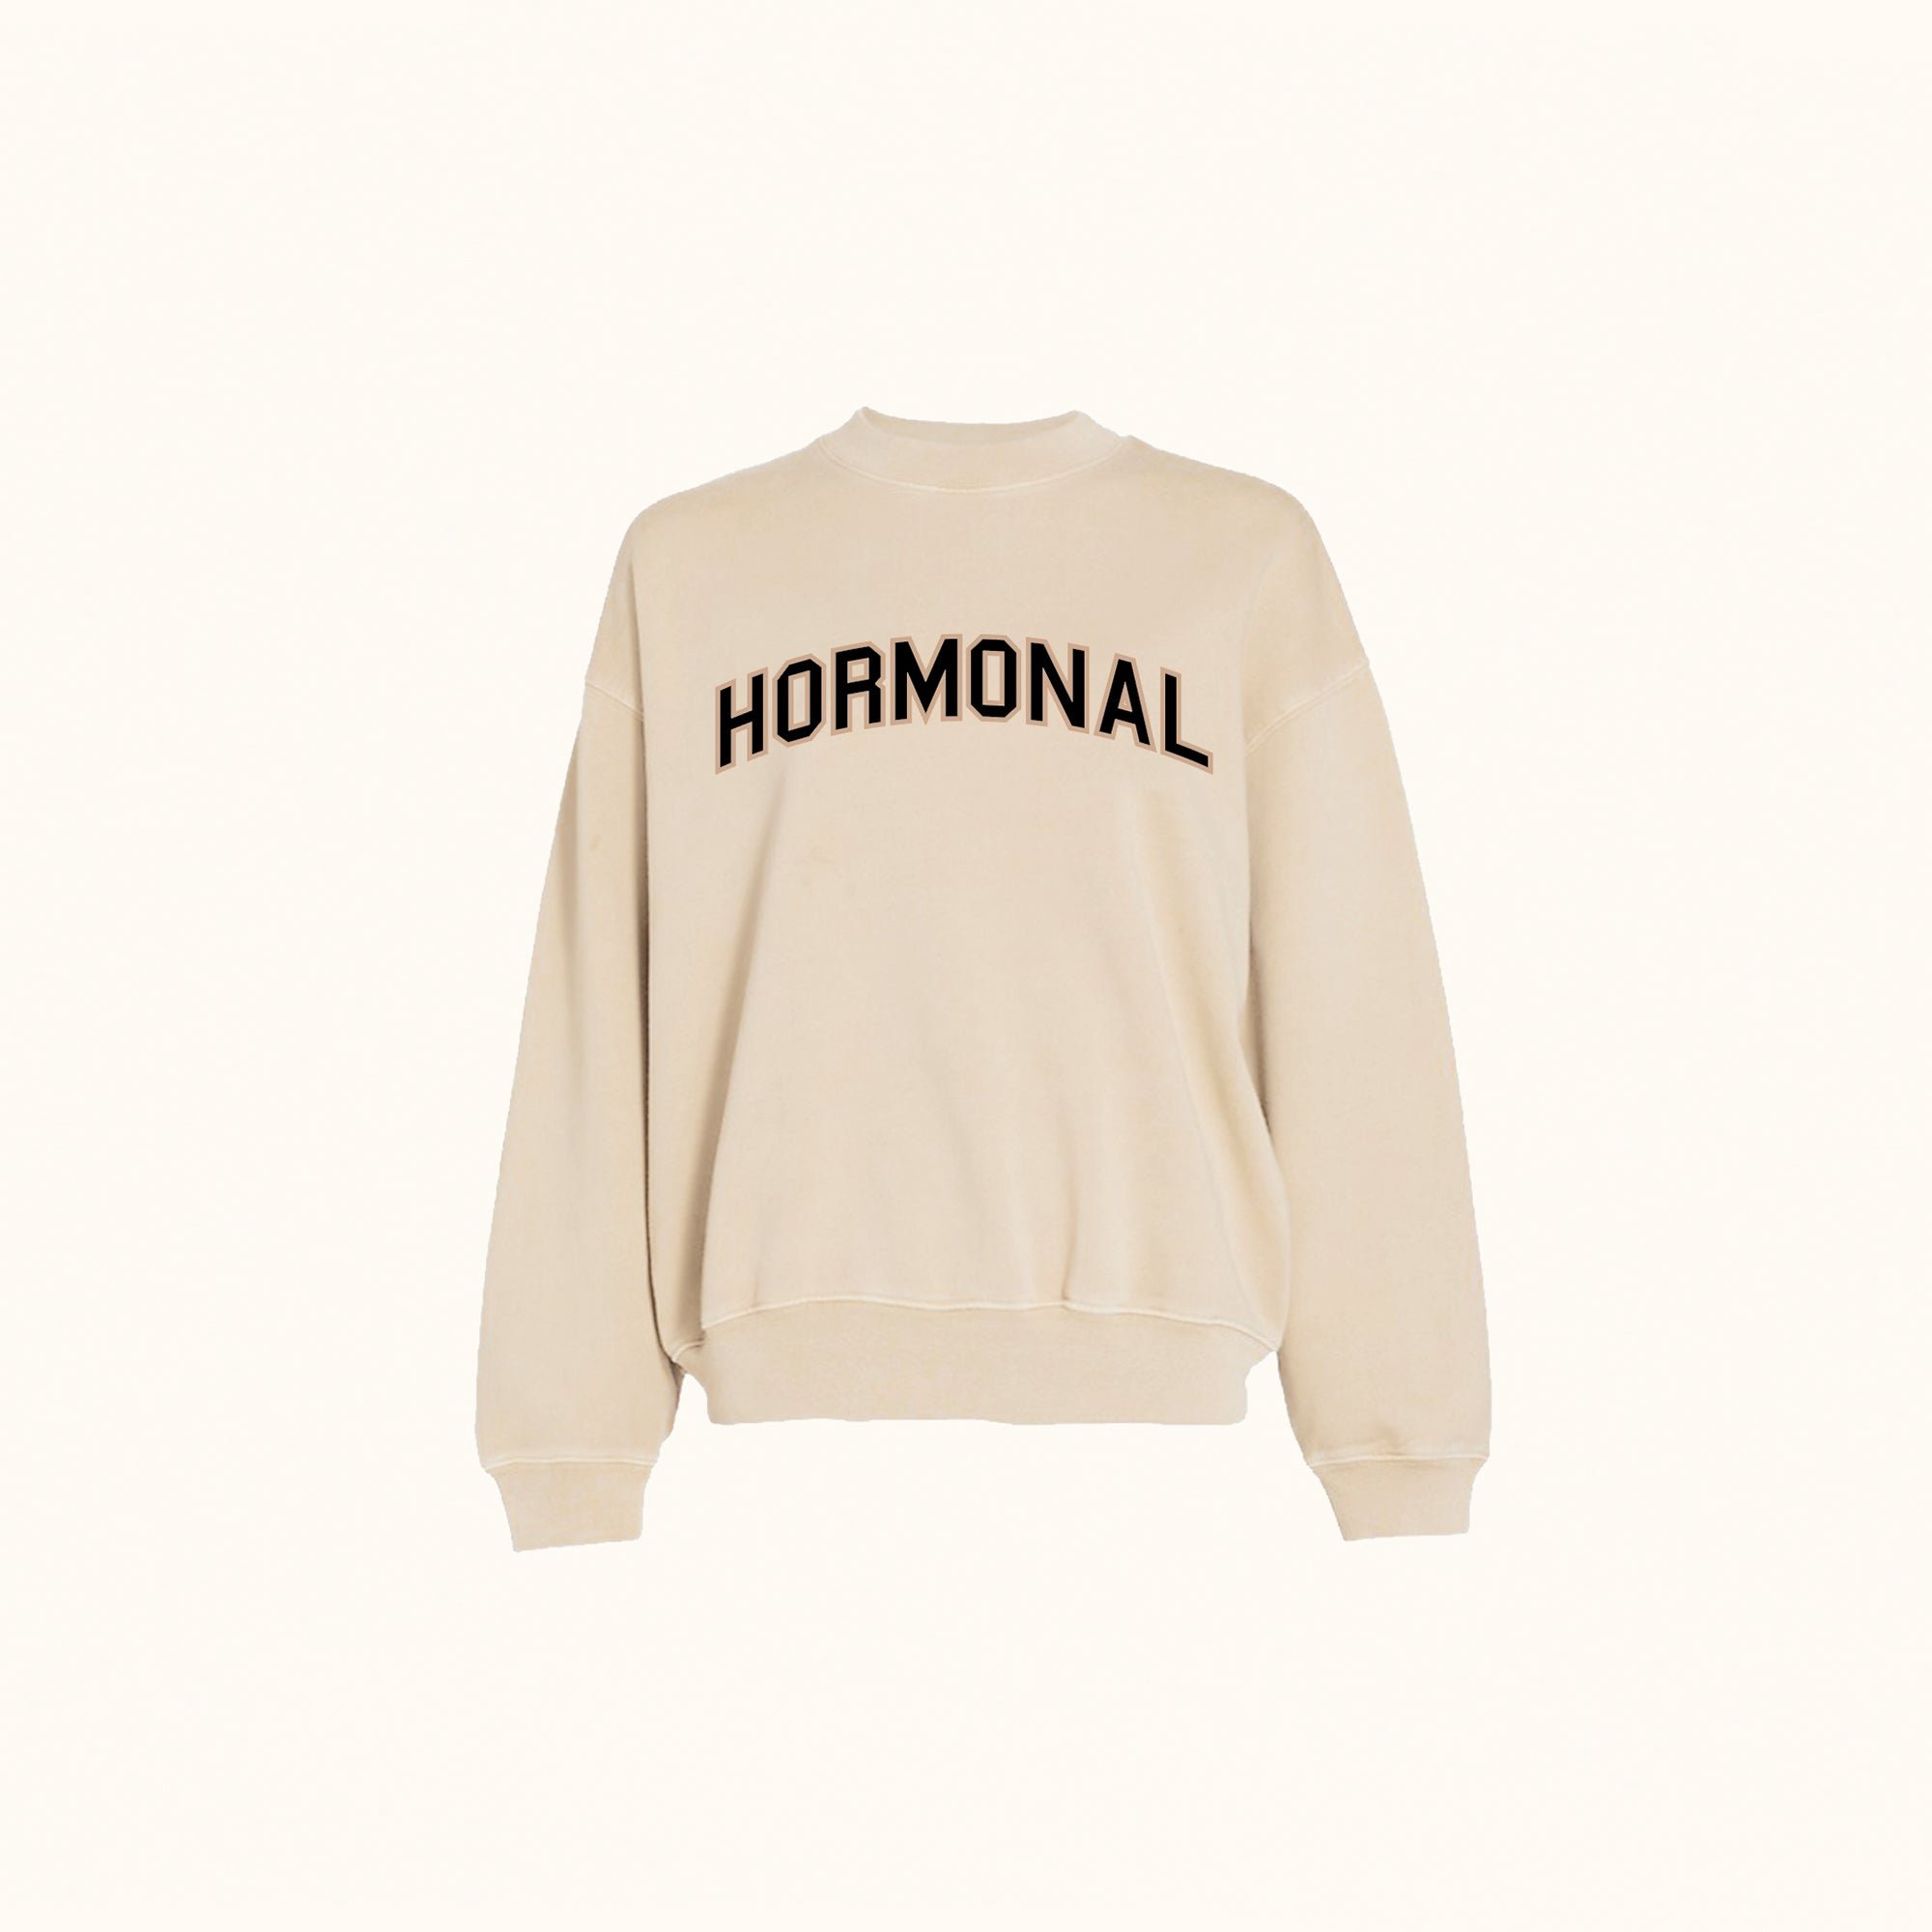 Hormonal Sweatshirt